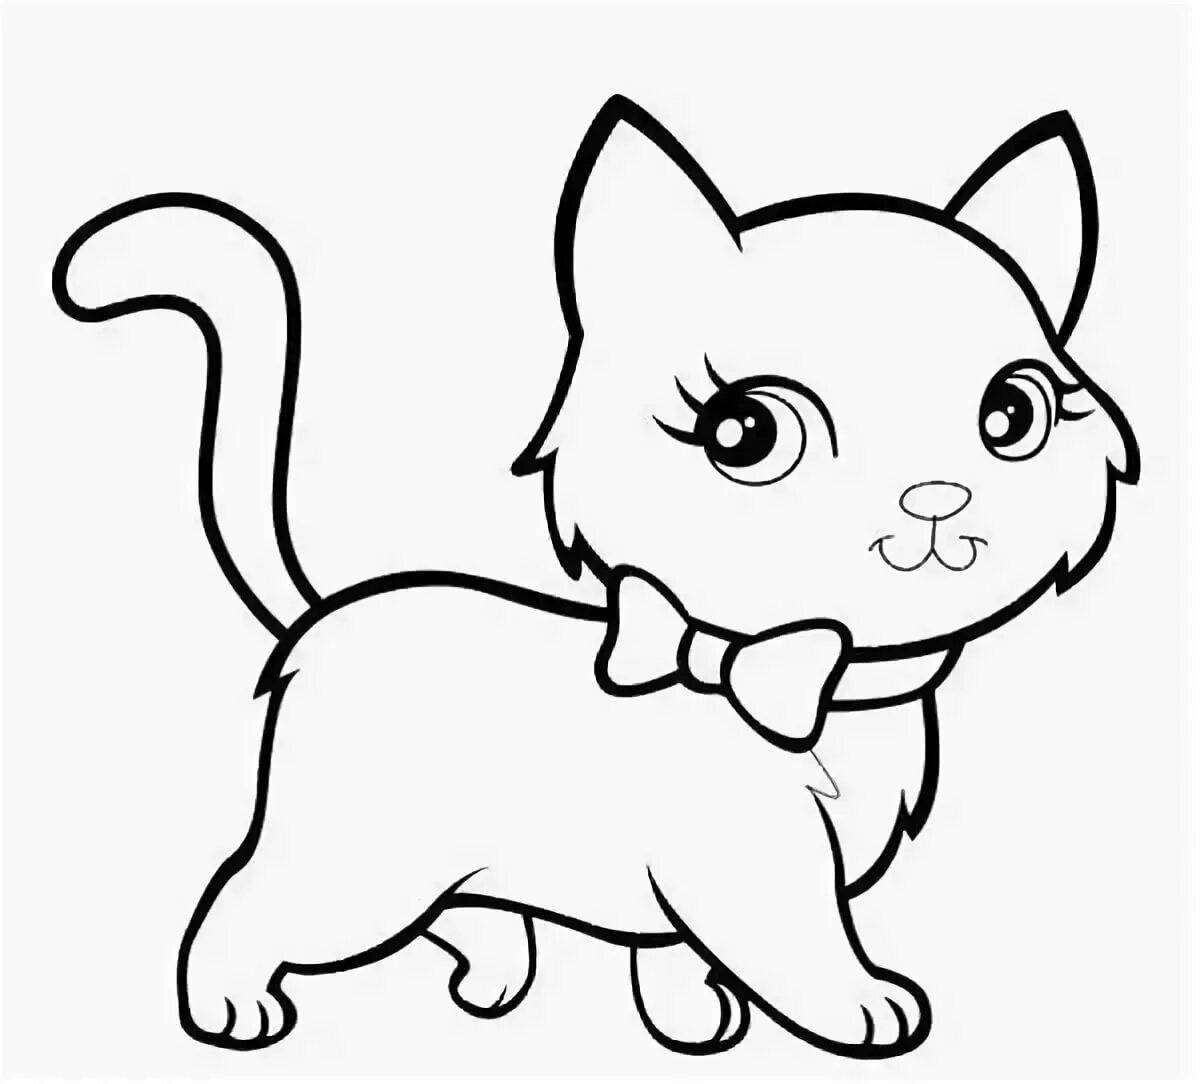 Дружелюбная раскраска кошка для детей 2-3 лет